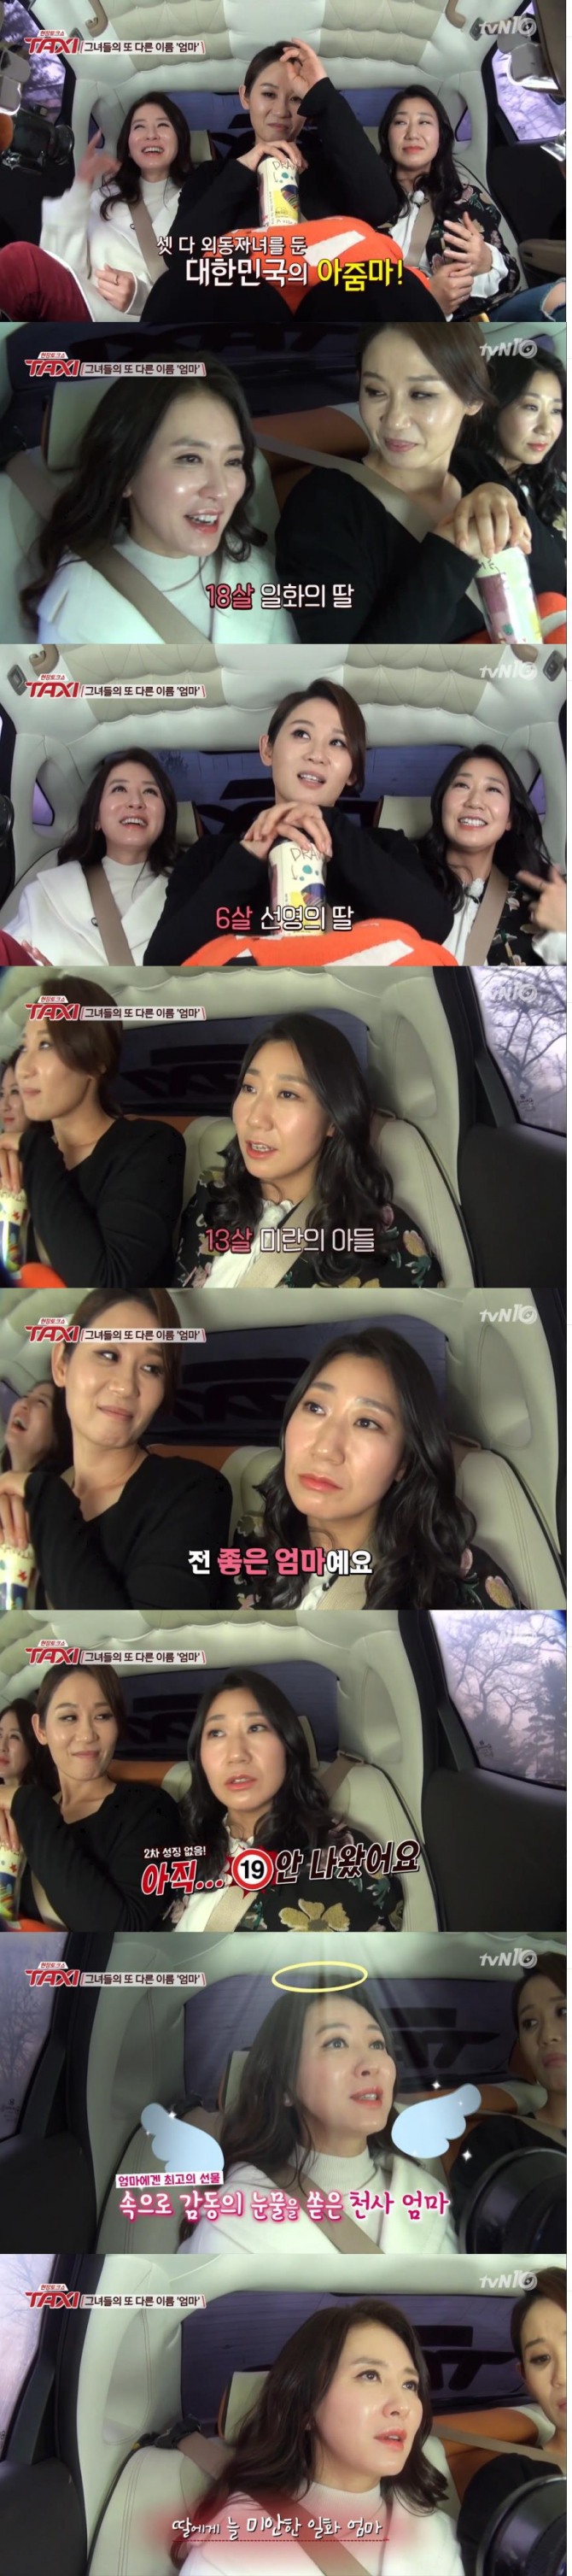 9일 방송된 tvN '현장토크쇼 택시'에서는 이일화, 라미란, 김선영의 자녀를 키우고 있는 실제 엄마의 모습이 고스란히 전해져 화제를 모았다./사진=tvN  방송 캡처 